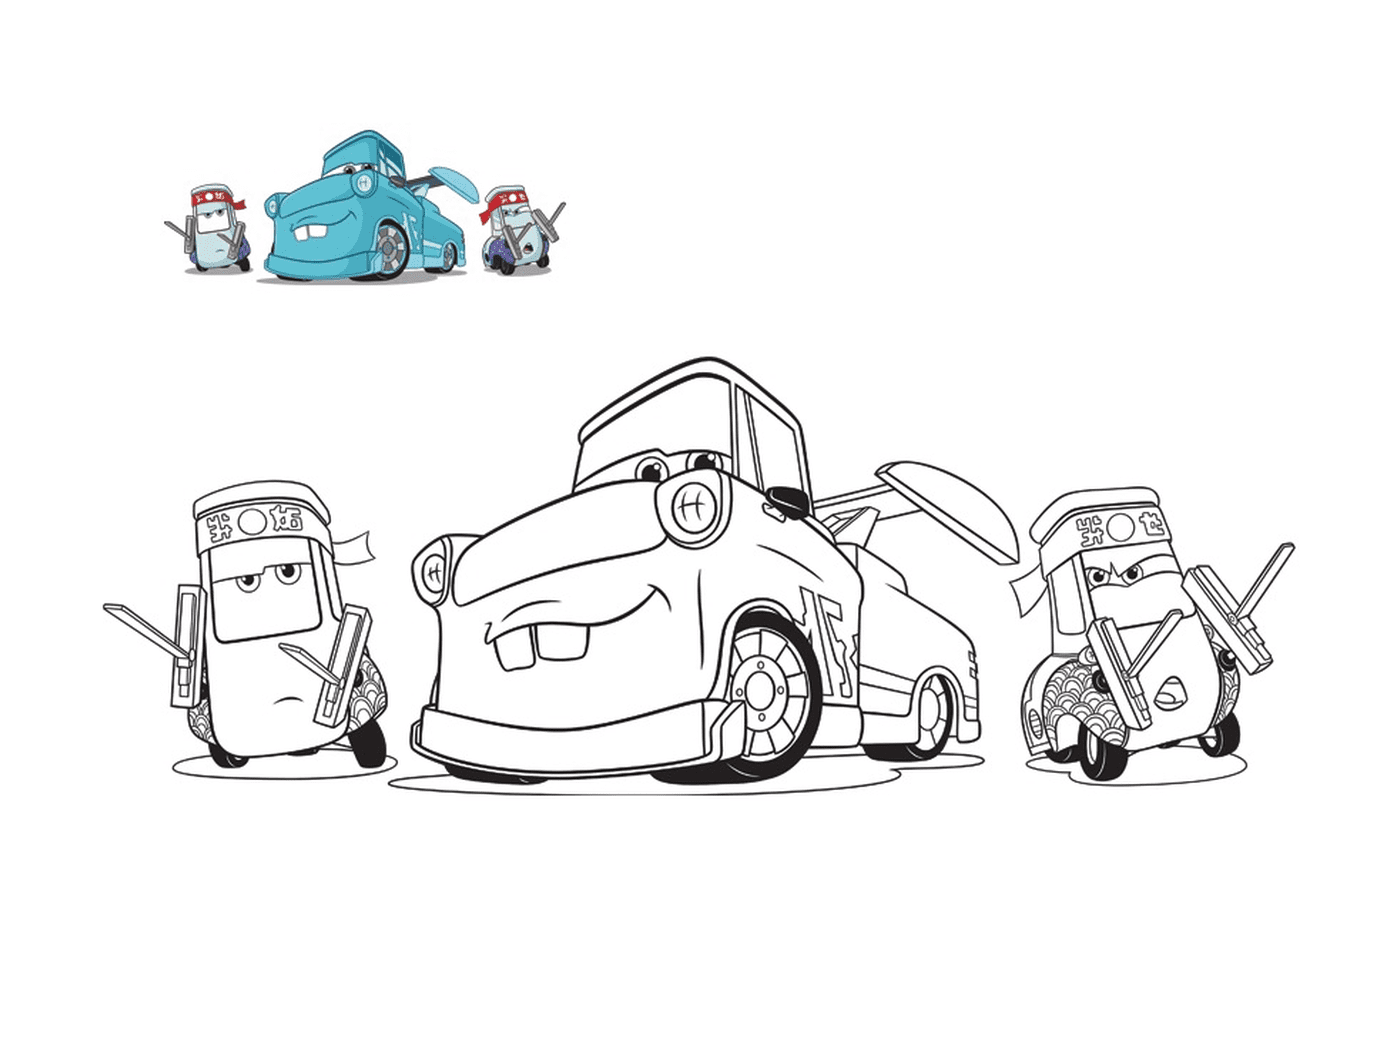   Cars 3, Guido et ses amis, voiture mécanique dépanneuse, ligne d'une voiture avec une voiture sur le sol 